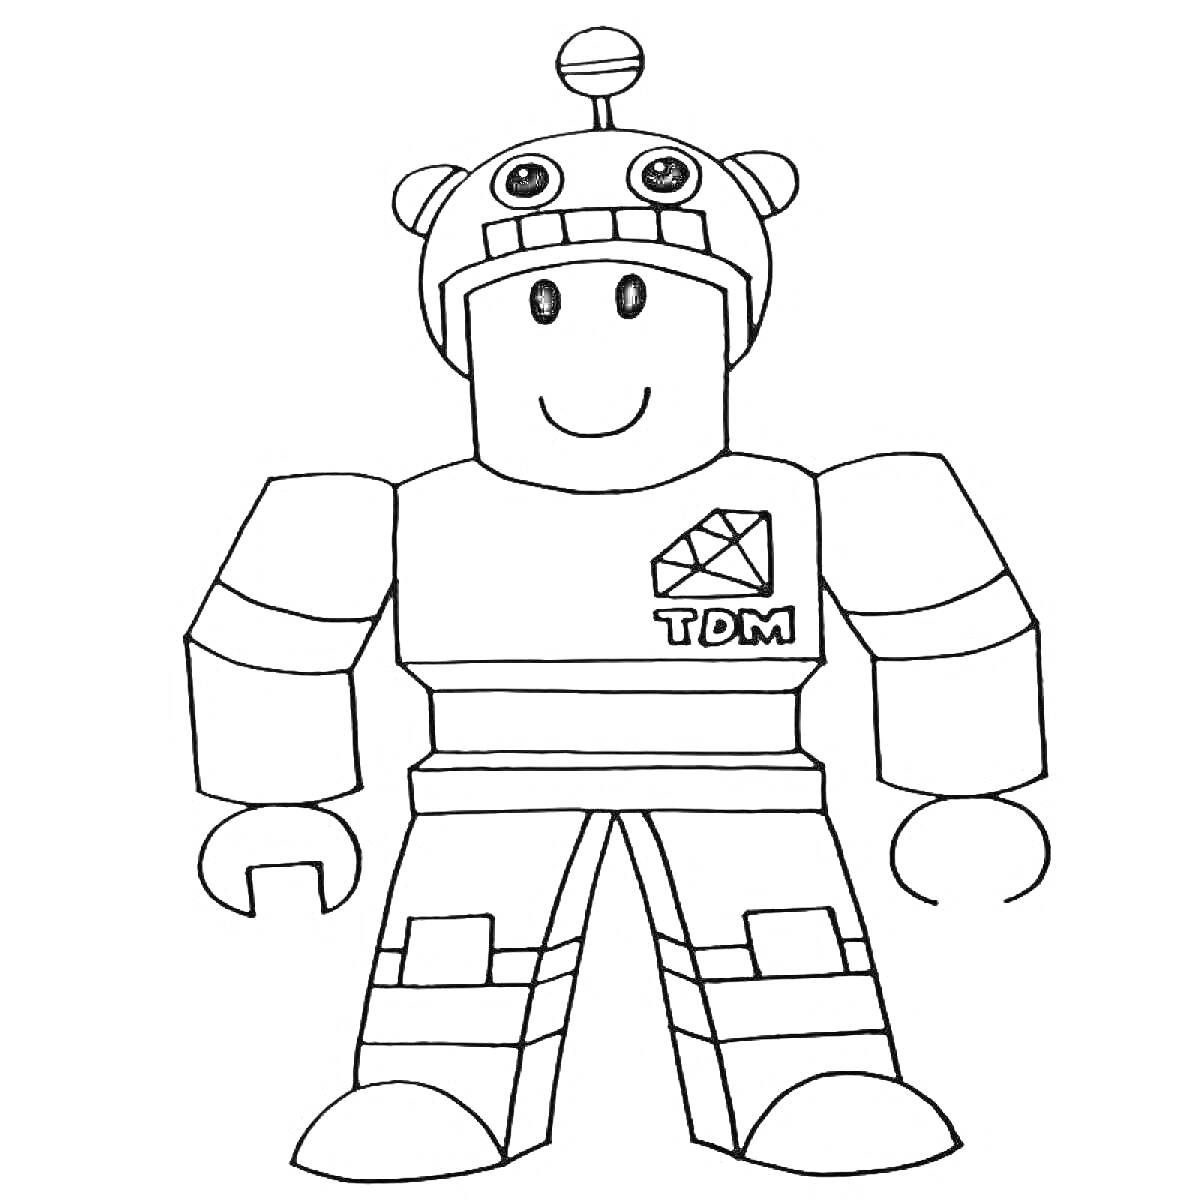 Раскраска Роблокс персонаж в шлеме с антеннами и логотипом TDM на груди